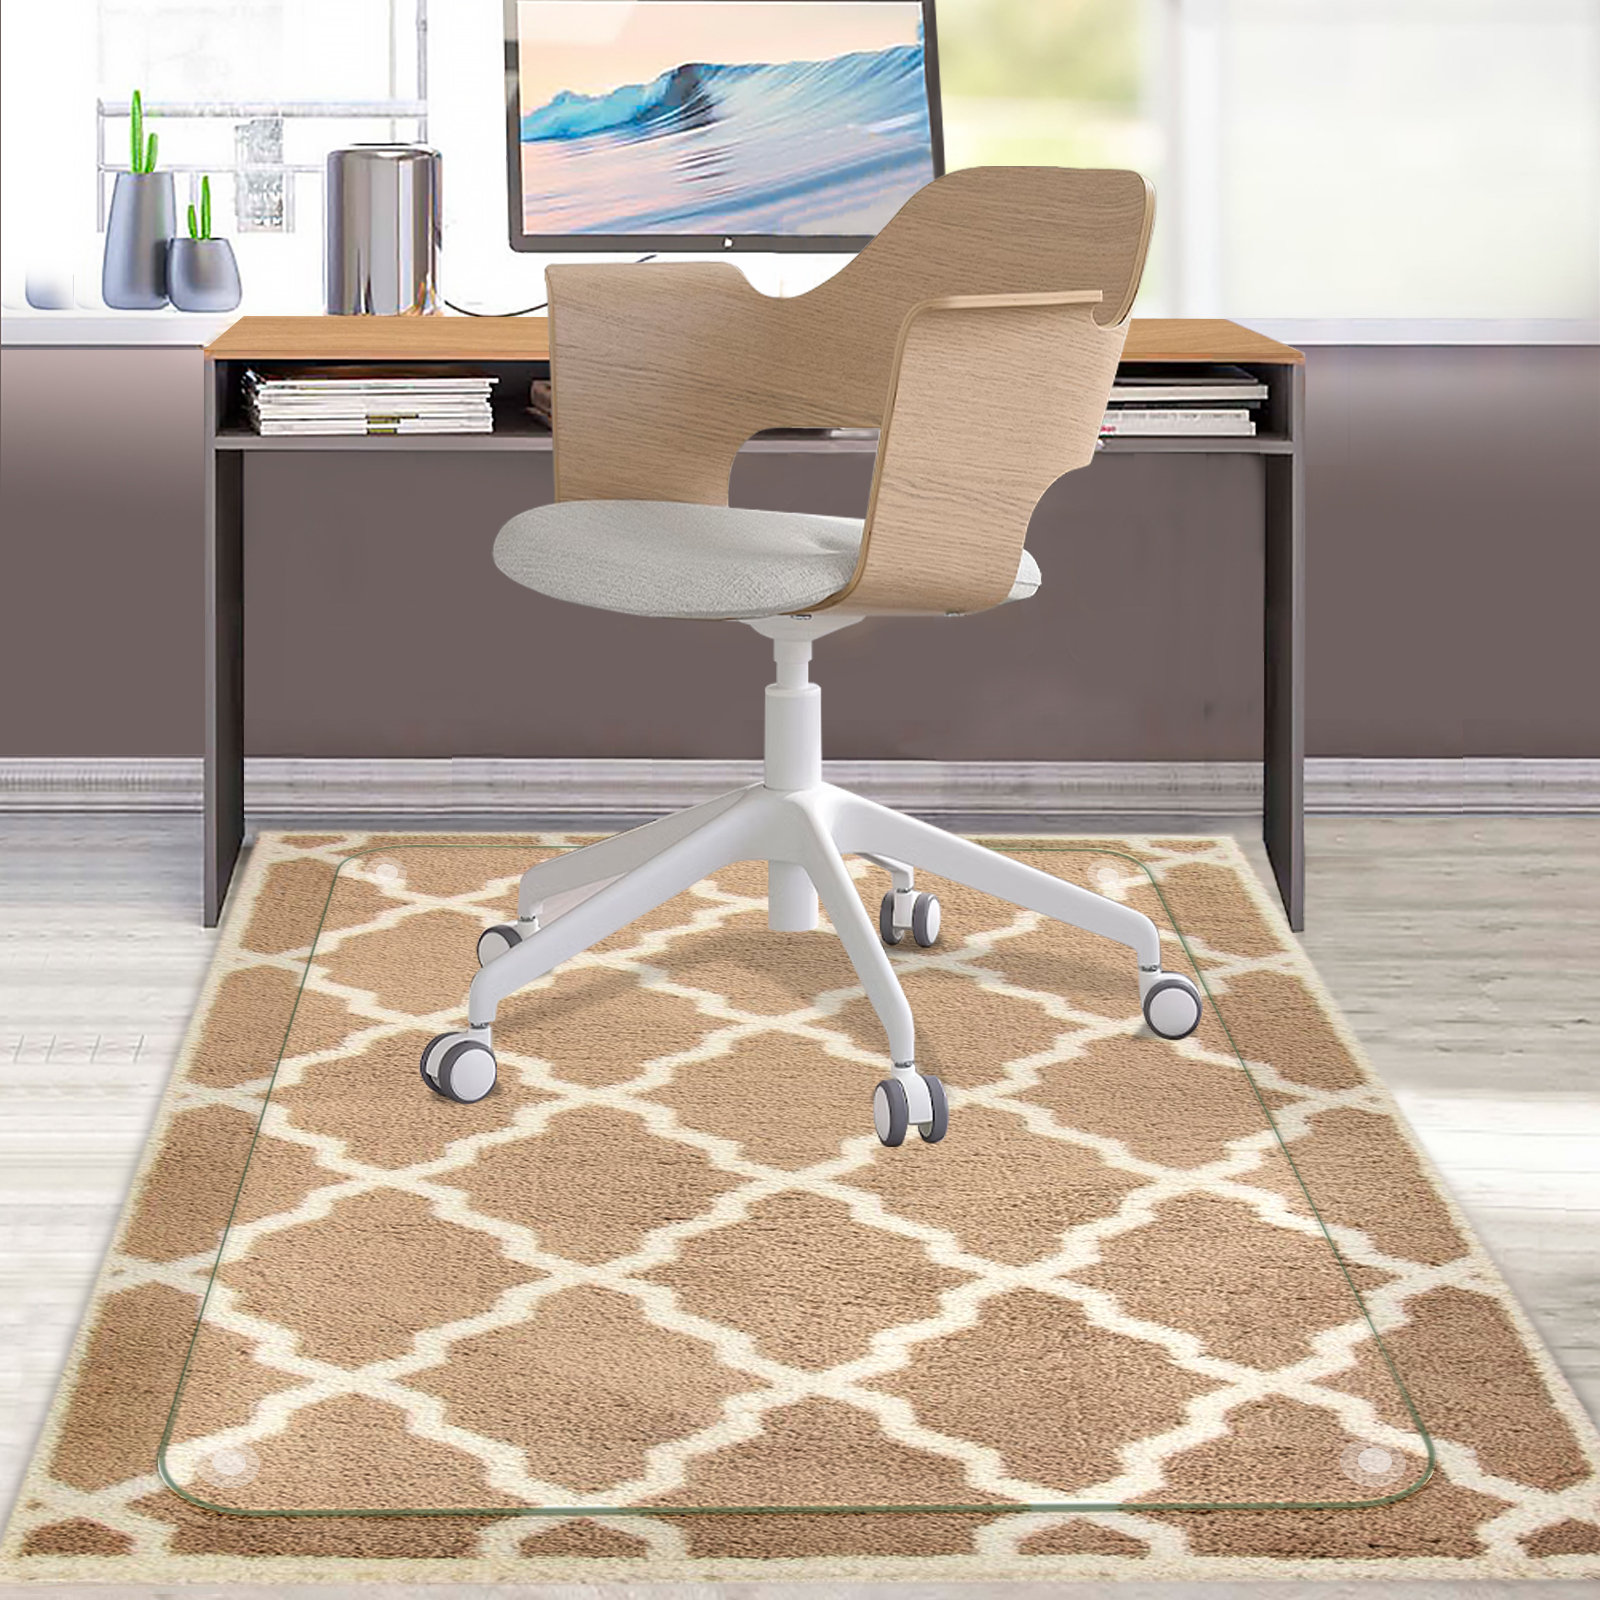 https://assets.wfcdn.com/im/74180532/compr-r85/2416/241628768/tempered-glass-chair-mat-office-chair-mats-for-carpet-hardwood-floor-desk-chair-mat-36x46x15.jpg